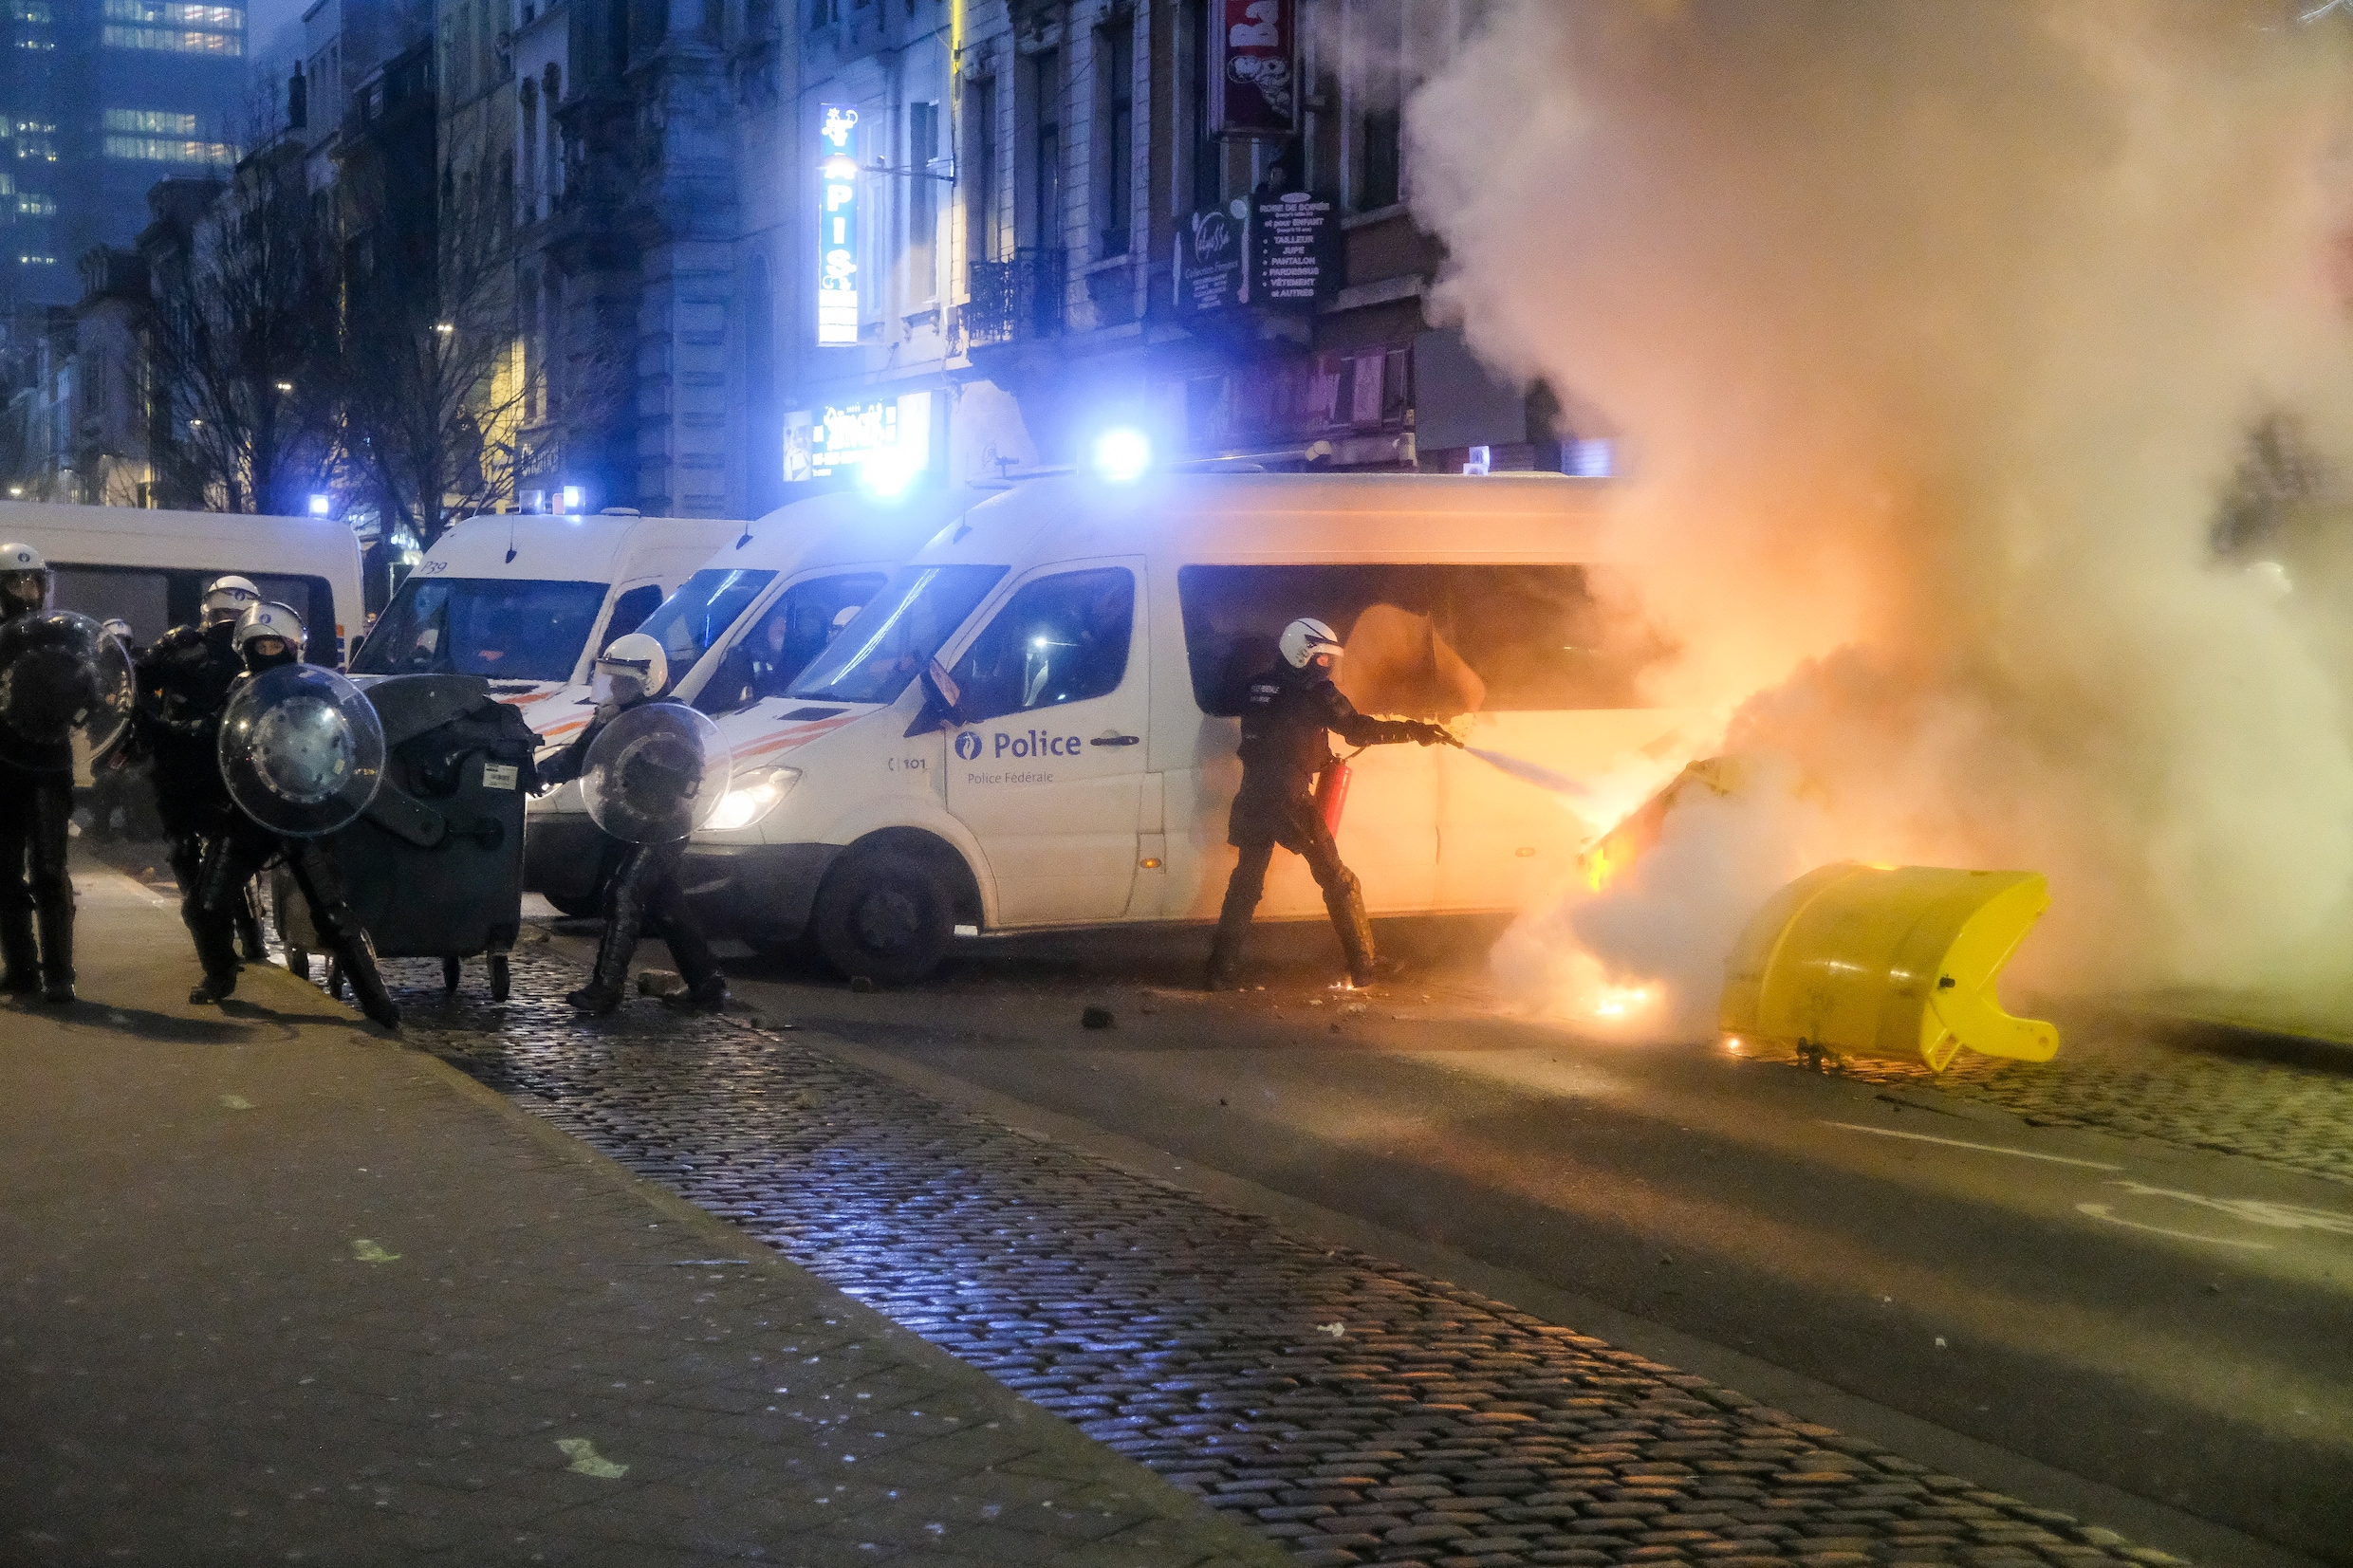 ▶ Meer dan 100 mensen gearresteerd na uit de hand gelopen protest in Brussel: ‘Relschoppers zullen niet vrijuit gaan’